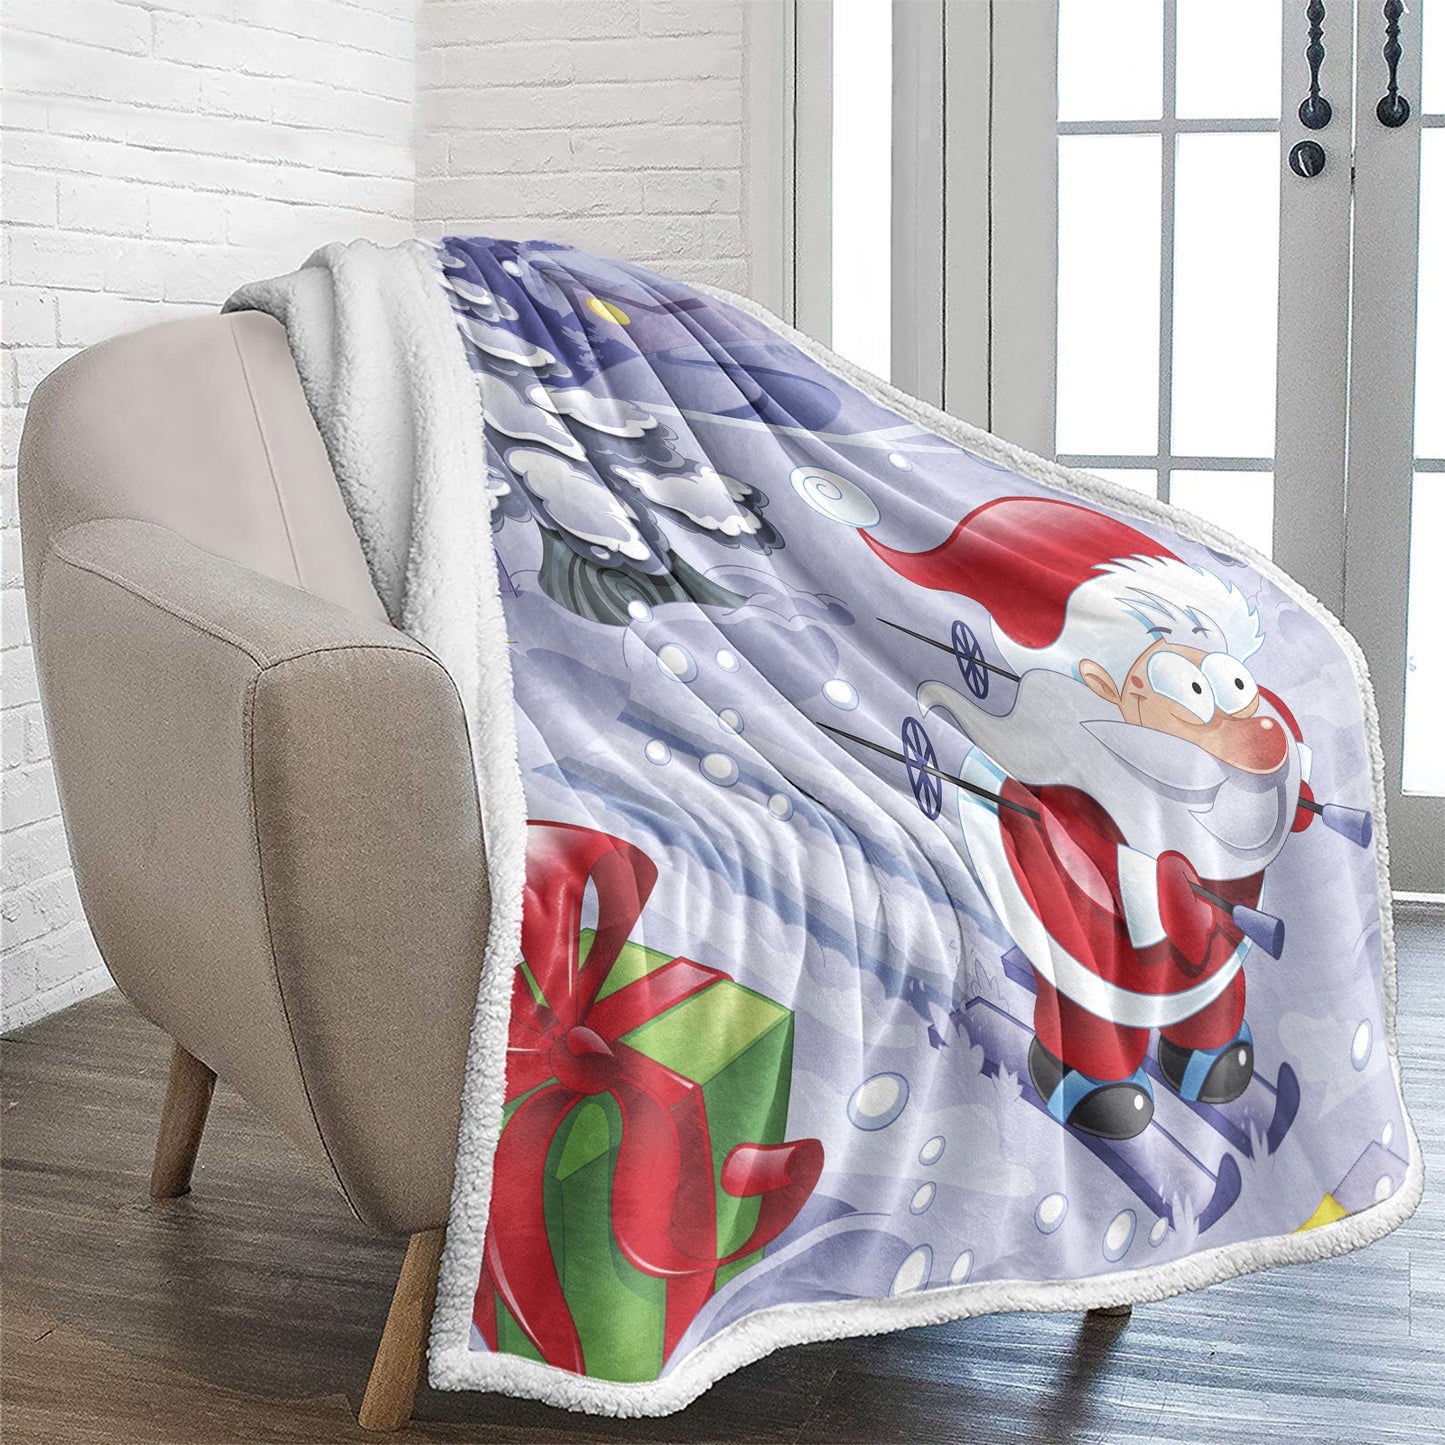 WONGS BEDDING Santa Claus Skiing Blanket